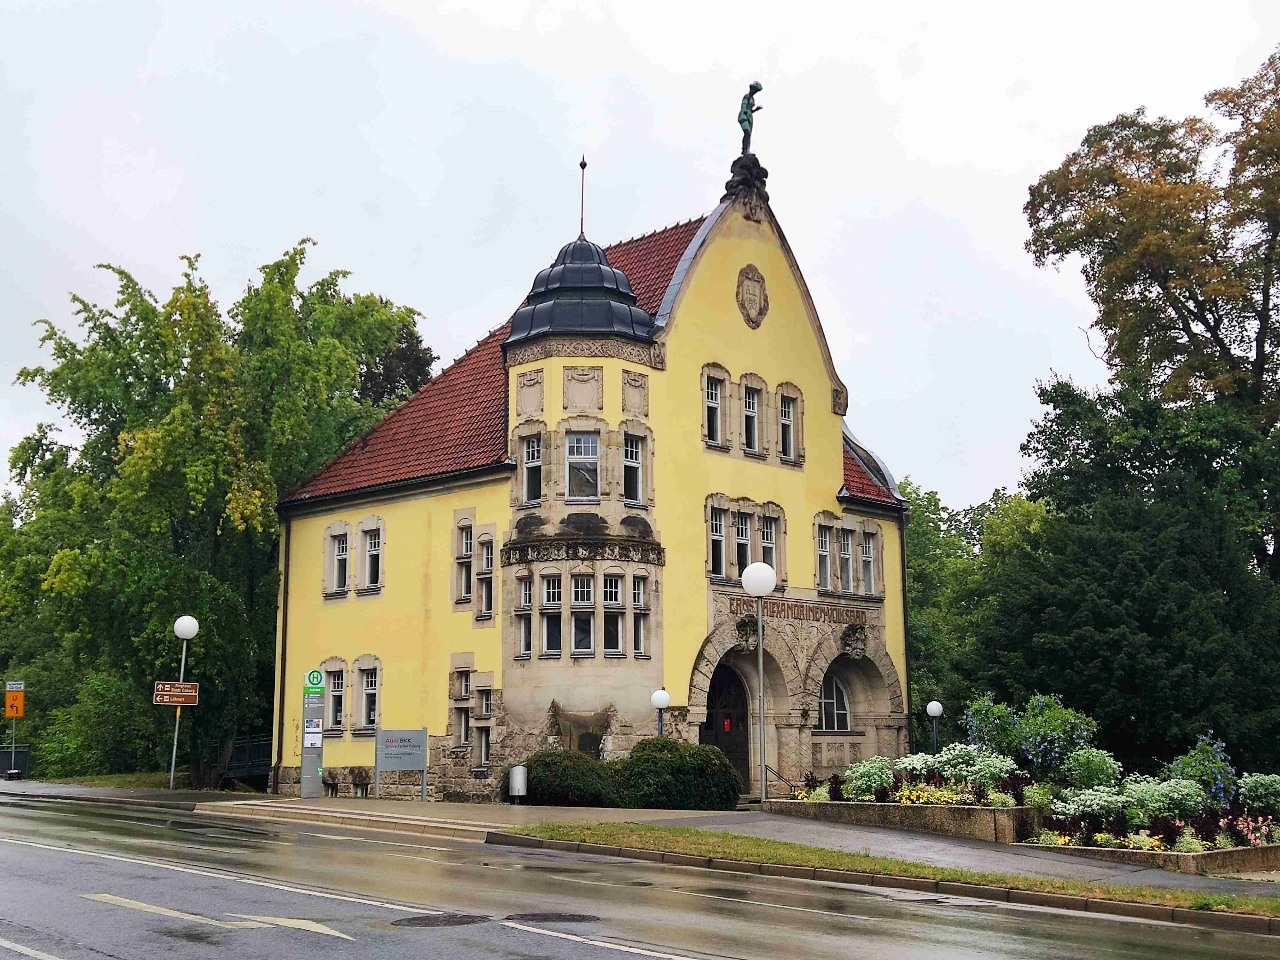 Baudenkmal Ernst-Alexandrinen-Volksbad - From Coburg, Germany